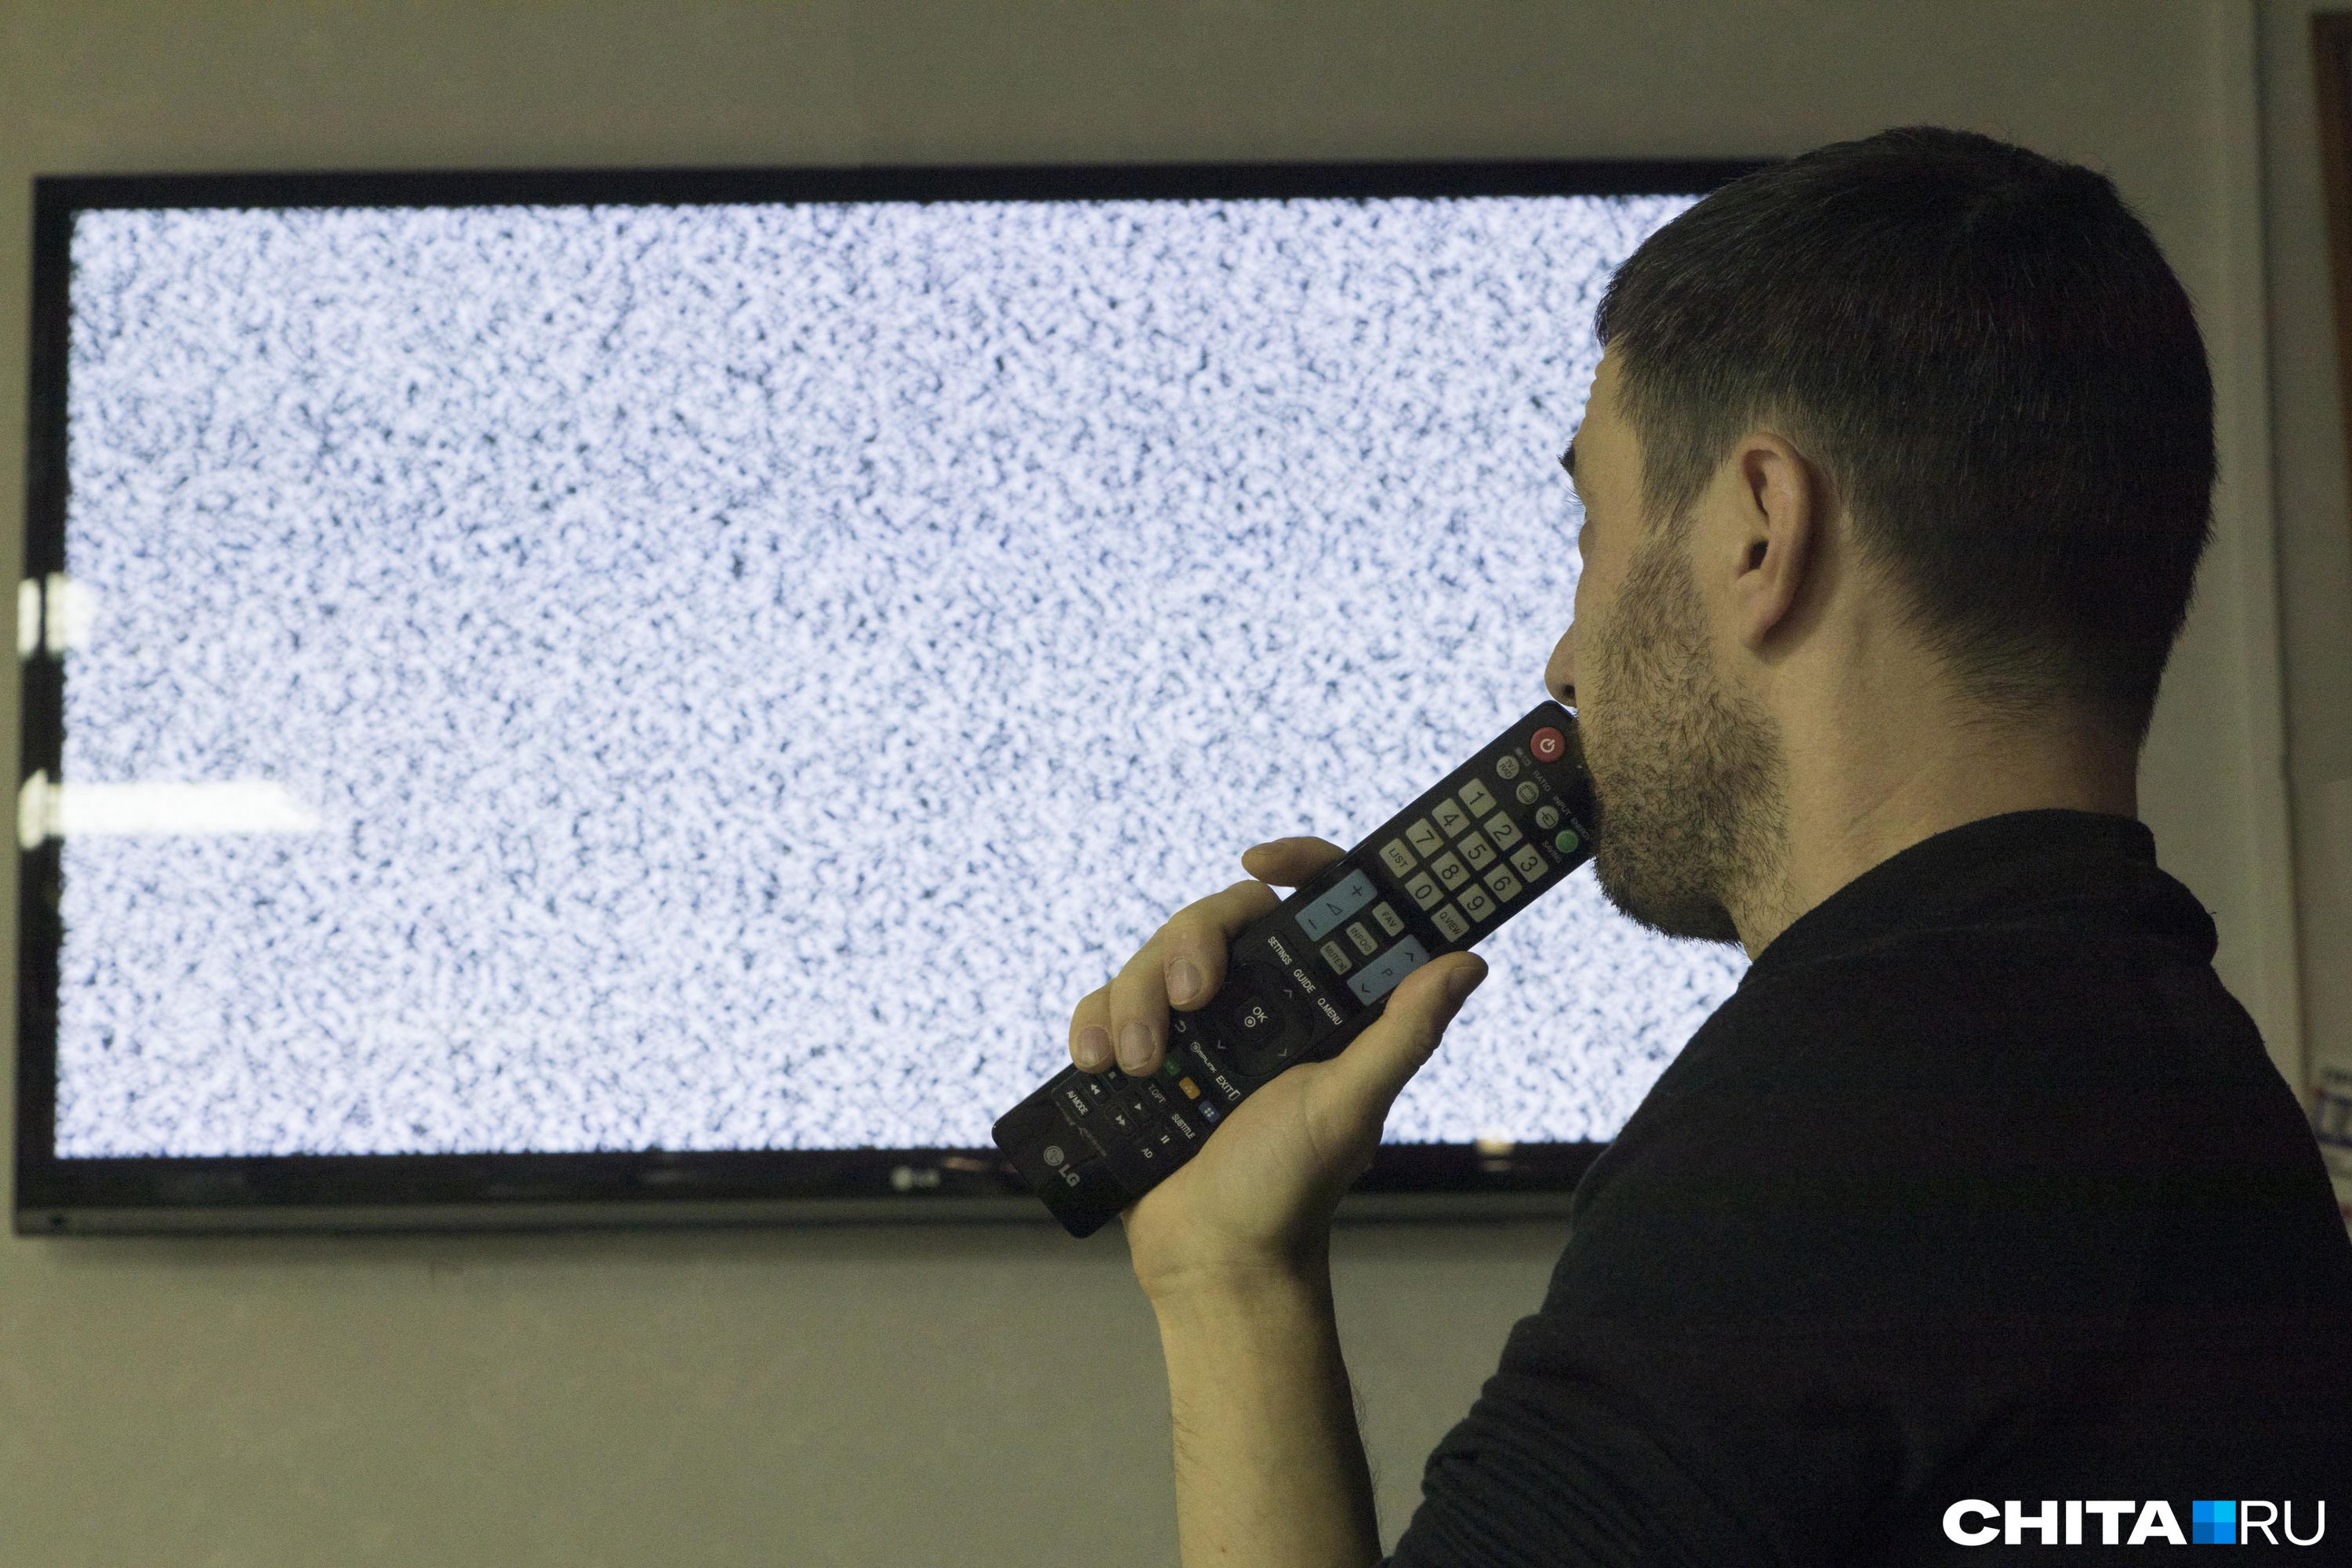 Телевидение Ростелеком не работает: что делать, если проблемы с ТВ